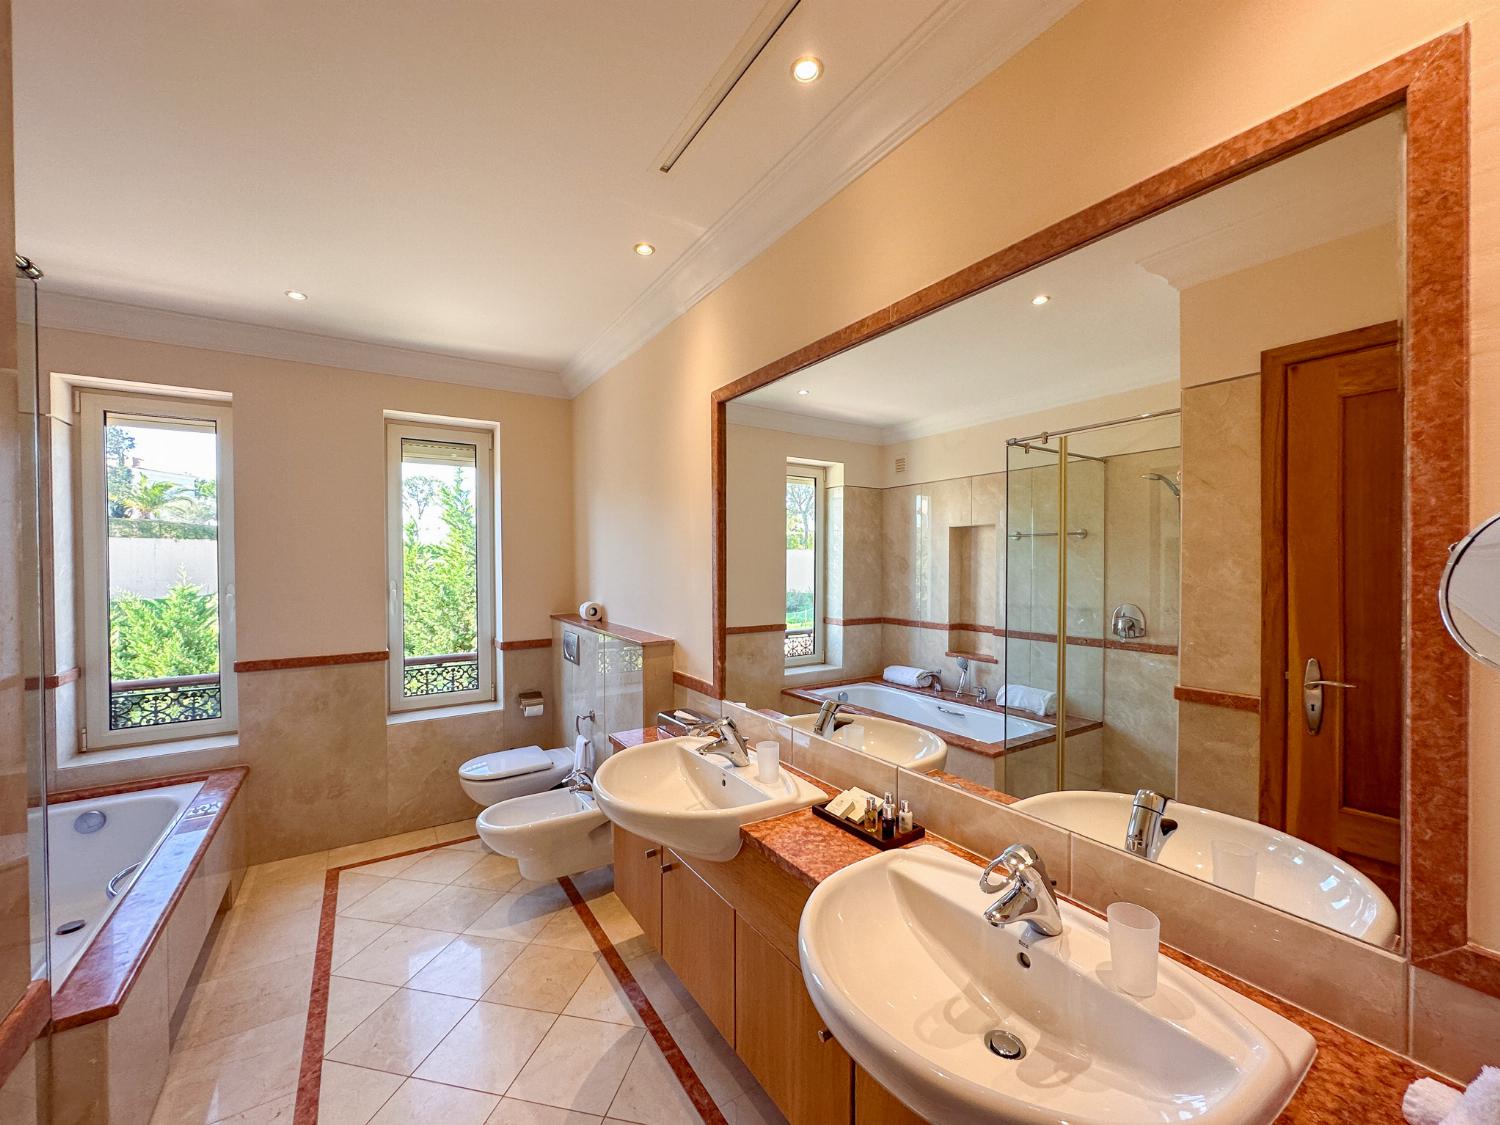 En suite bathroom with bath